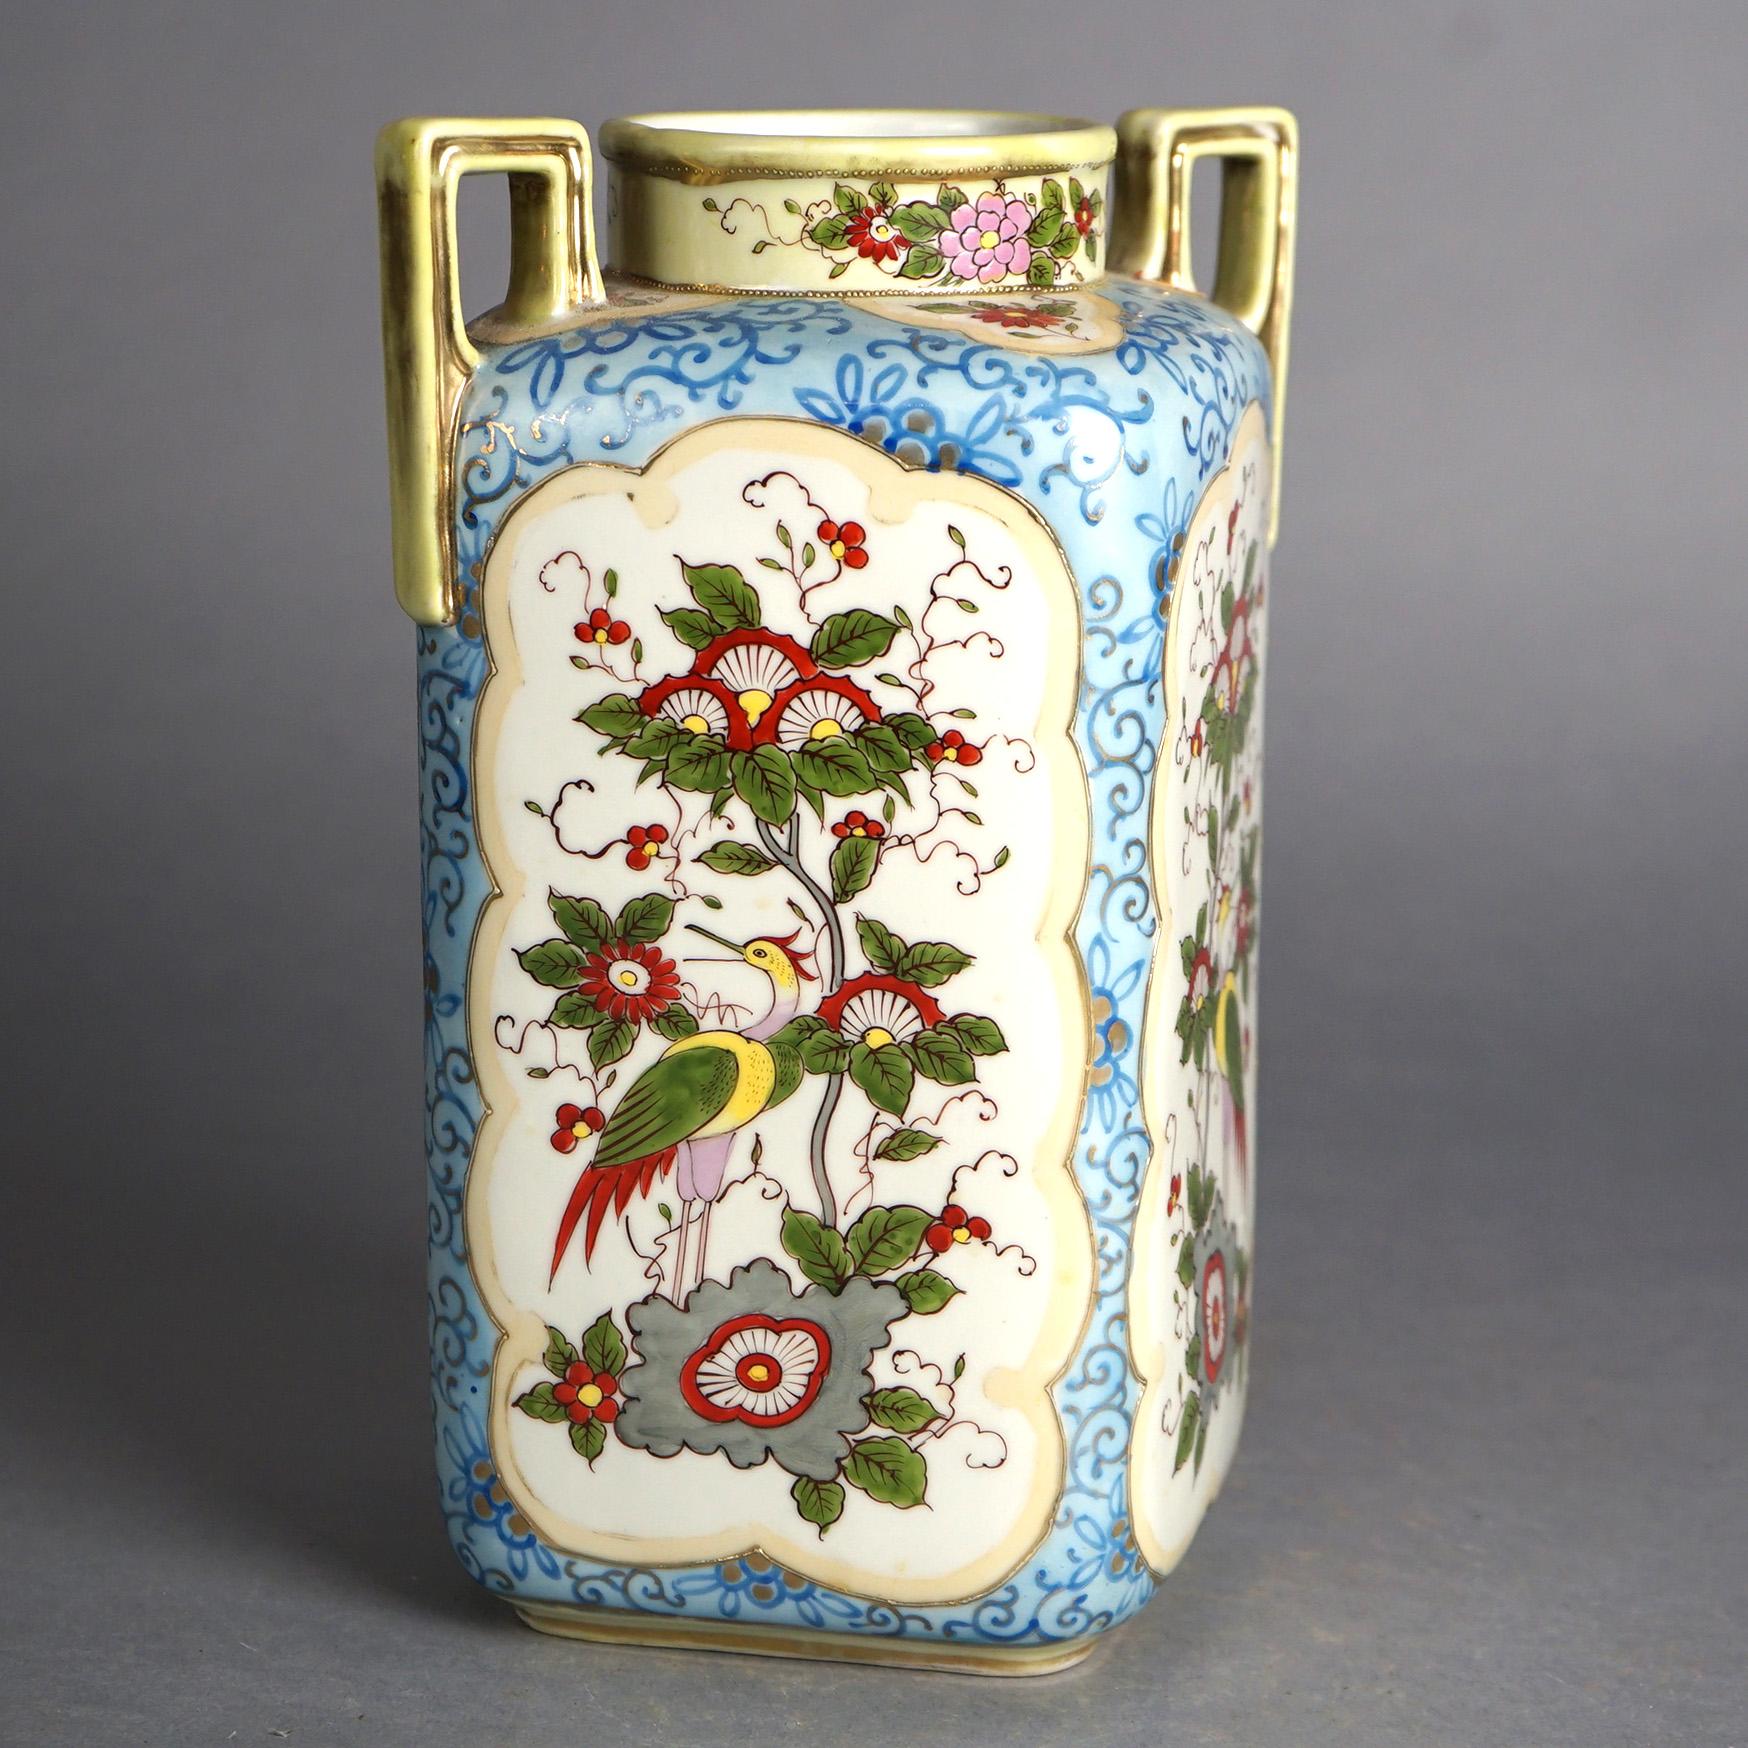 Antique Nippon Floral Hand Painted Porcelain Double Handled Vase C1920

Measures- 10.75''H x 7.5''W x 5.75''D